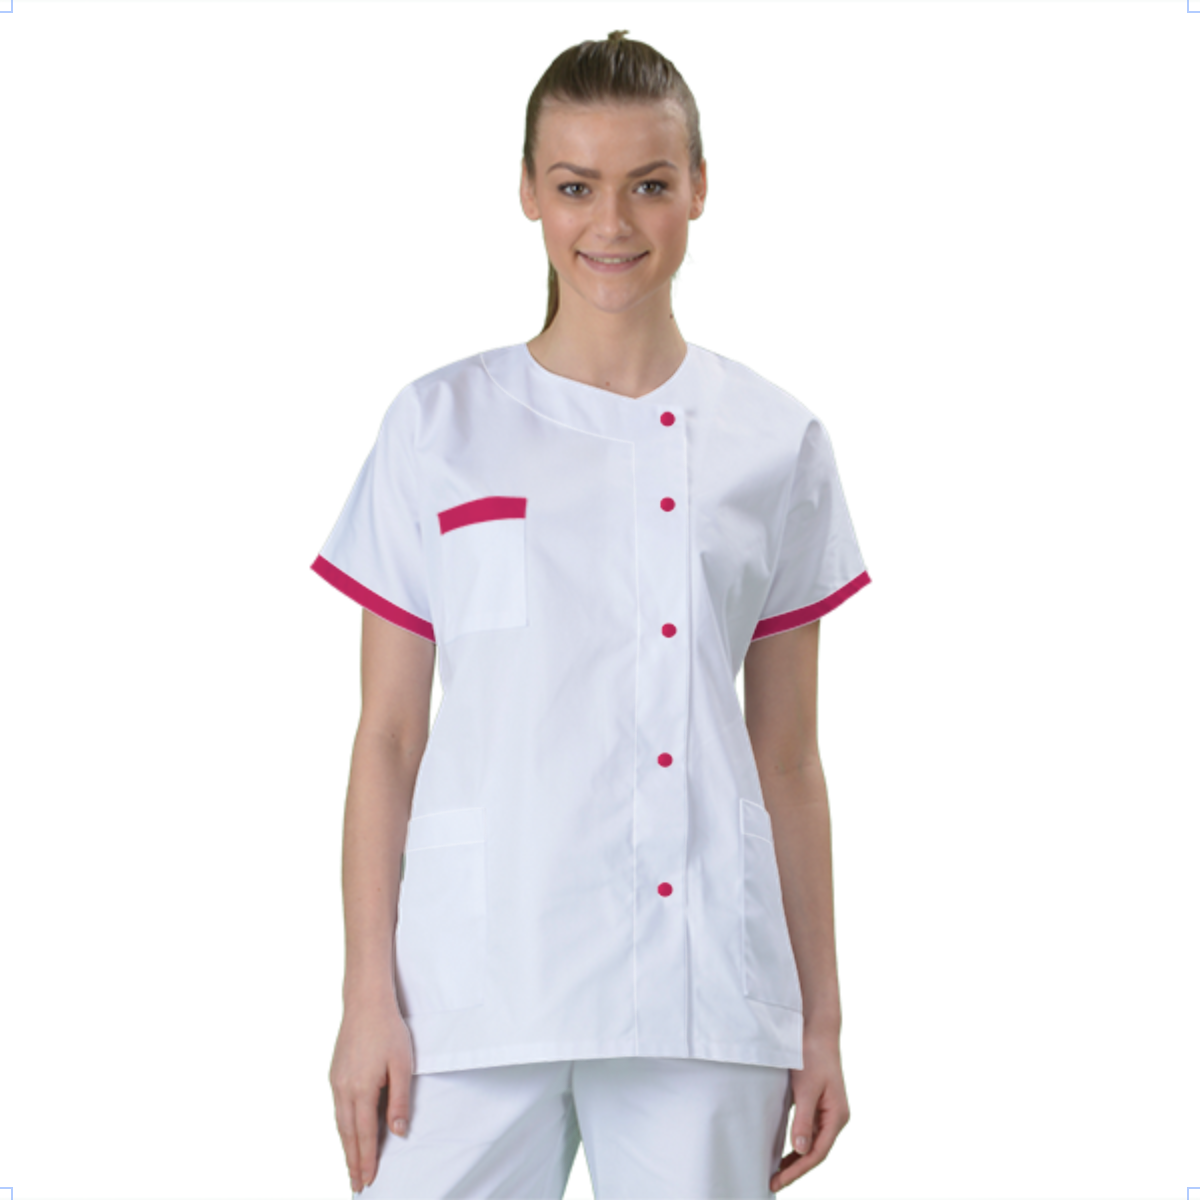 blouse-medicale-col-carre-a-personnaliser acheté - par Fadia  - le 11-02-2017